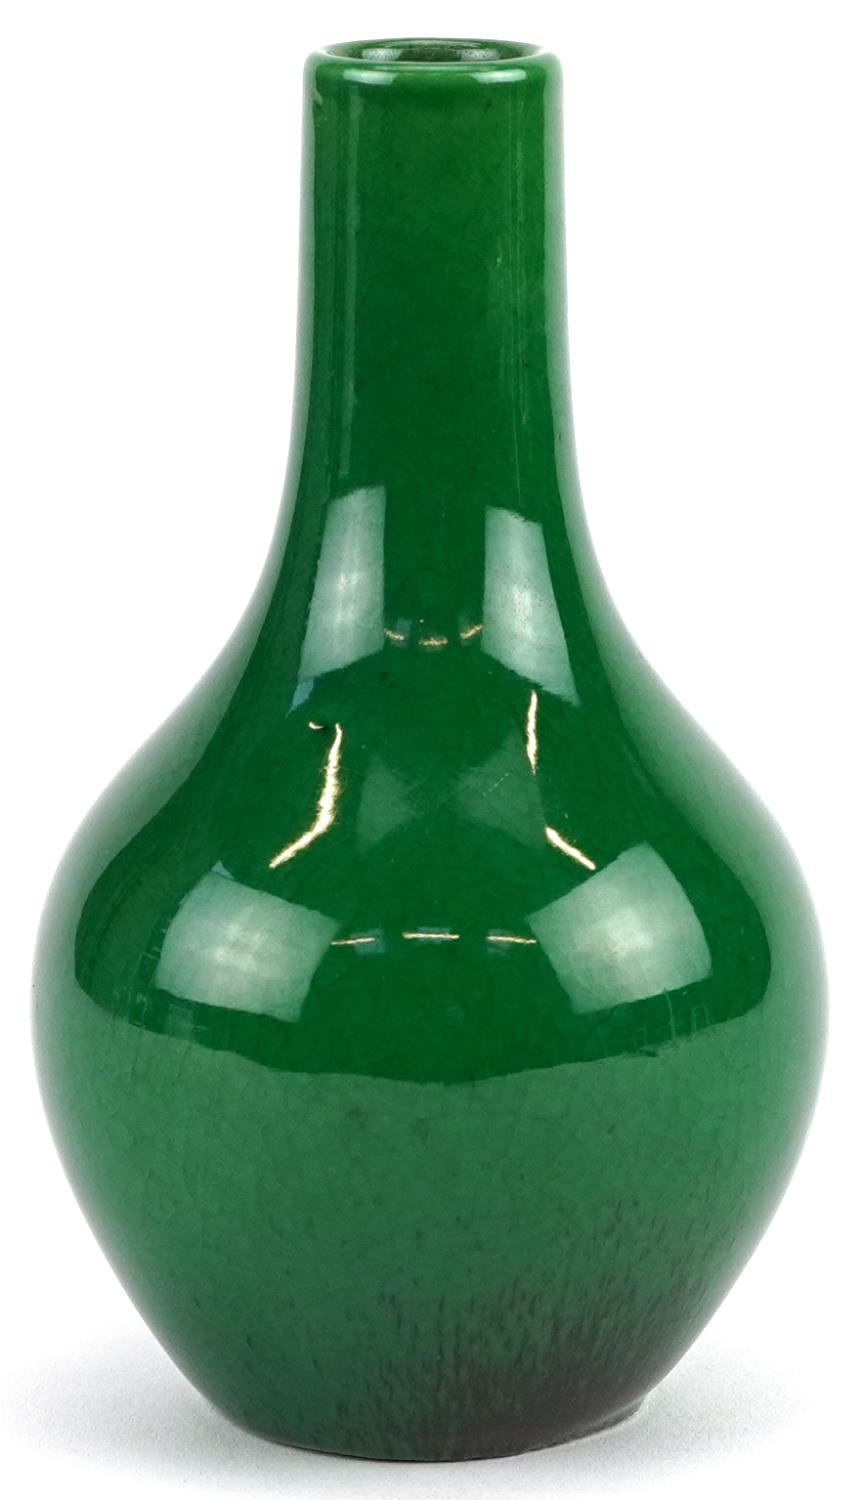 Chinese porcelain vase having a green crackle glaze, 12cm high - Image 4 of 6